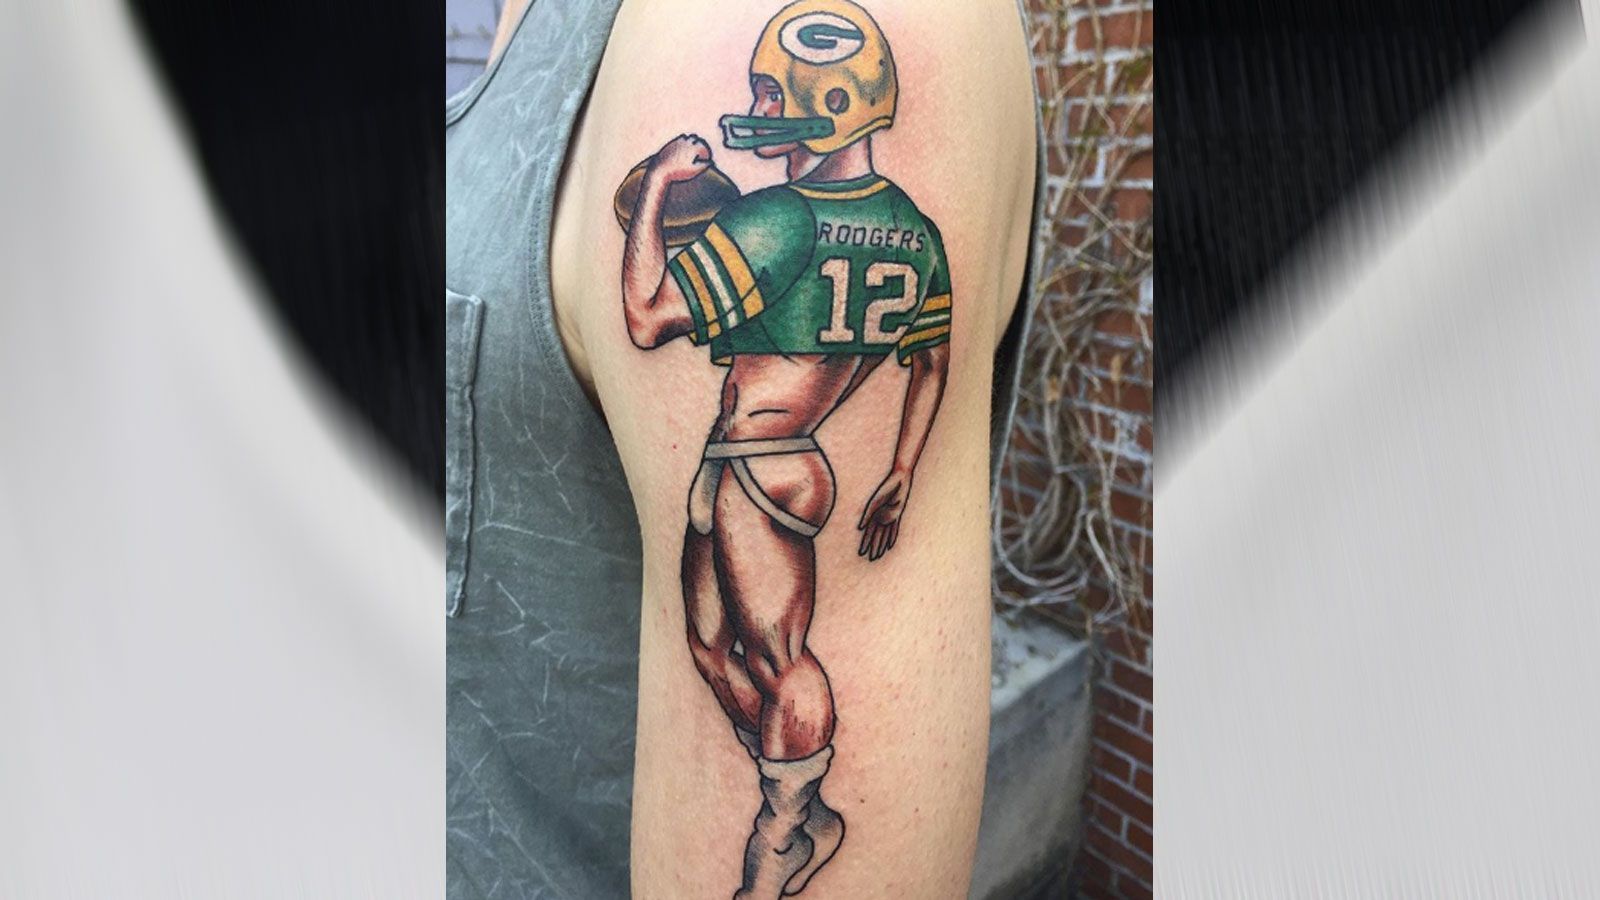 
                <strong>Aaron Rodgers als Pinup</strong><br>
                Verehrer von Aaron Rodgers? Oder Verächter des Quarterbacks der Green Bay Packers? So ganz schlau werden wir nicht aus diesem Tattoo. Die Team-Legende als Pinup darzustellen, ist zumindest gewagt.
              